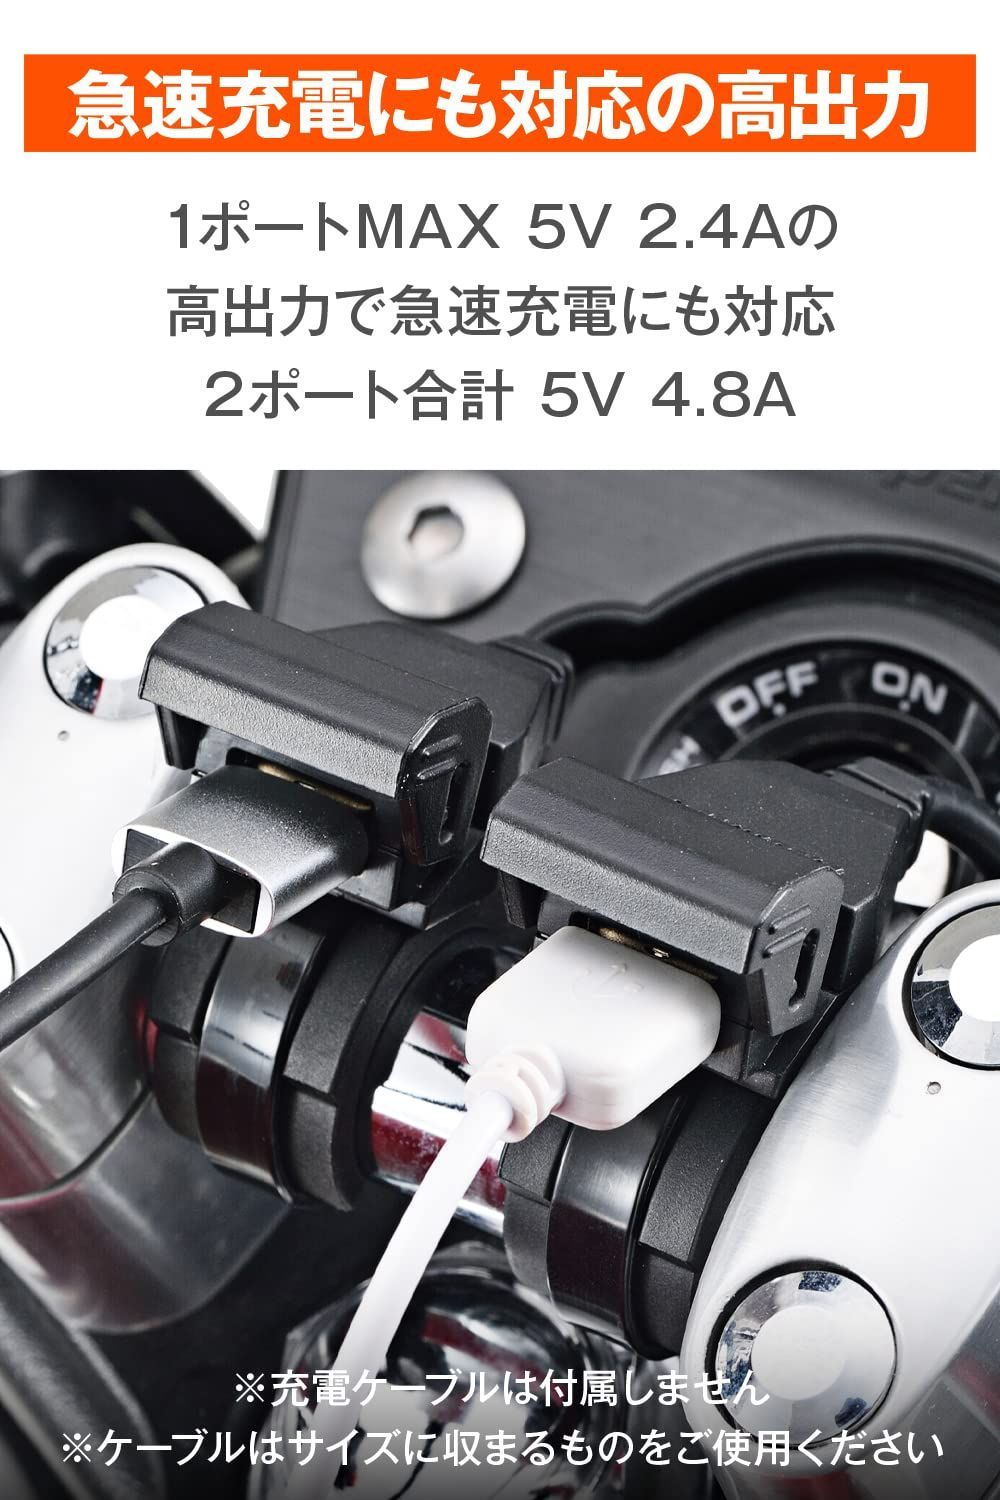 お買い得モデル DAYTONA デイトナ 4.8A バイク専用電源 メインキー連動 USB2ポート USB2口 合計5V4.8A 